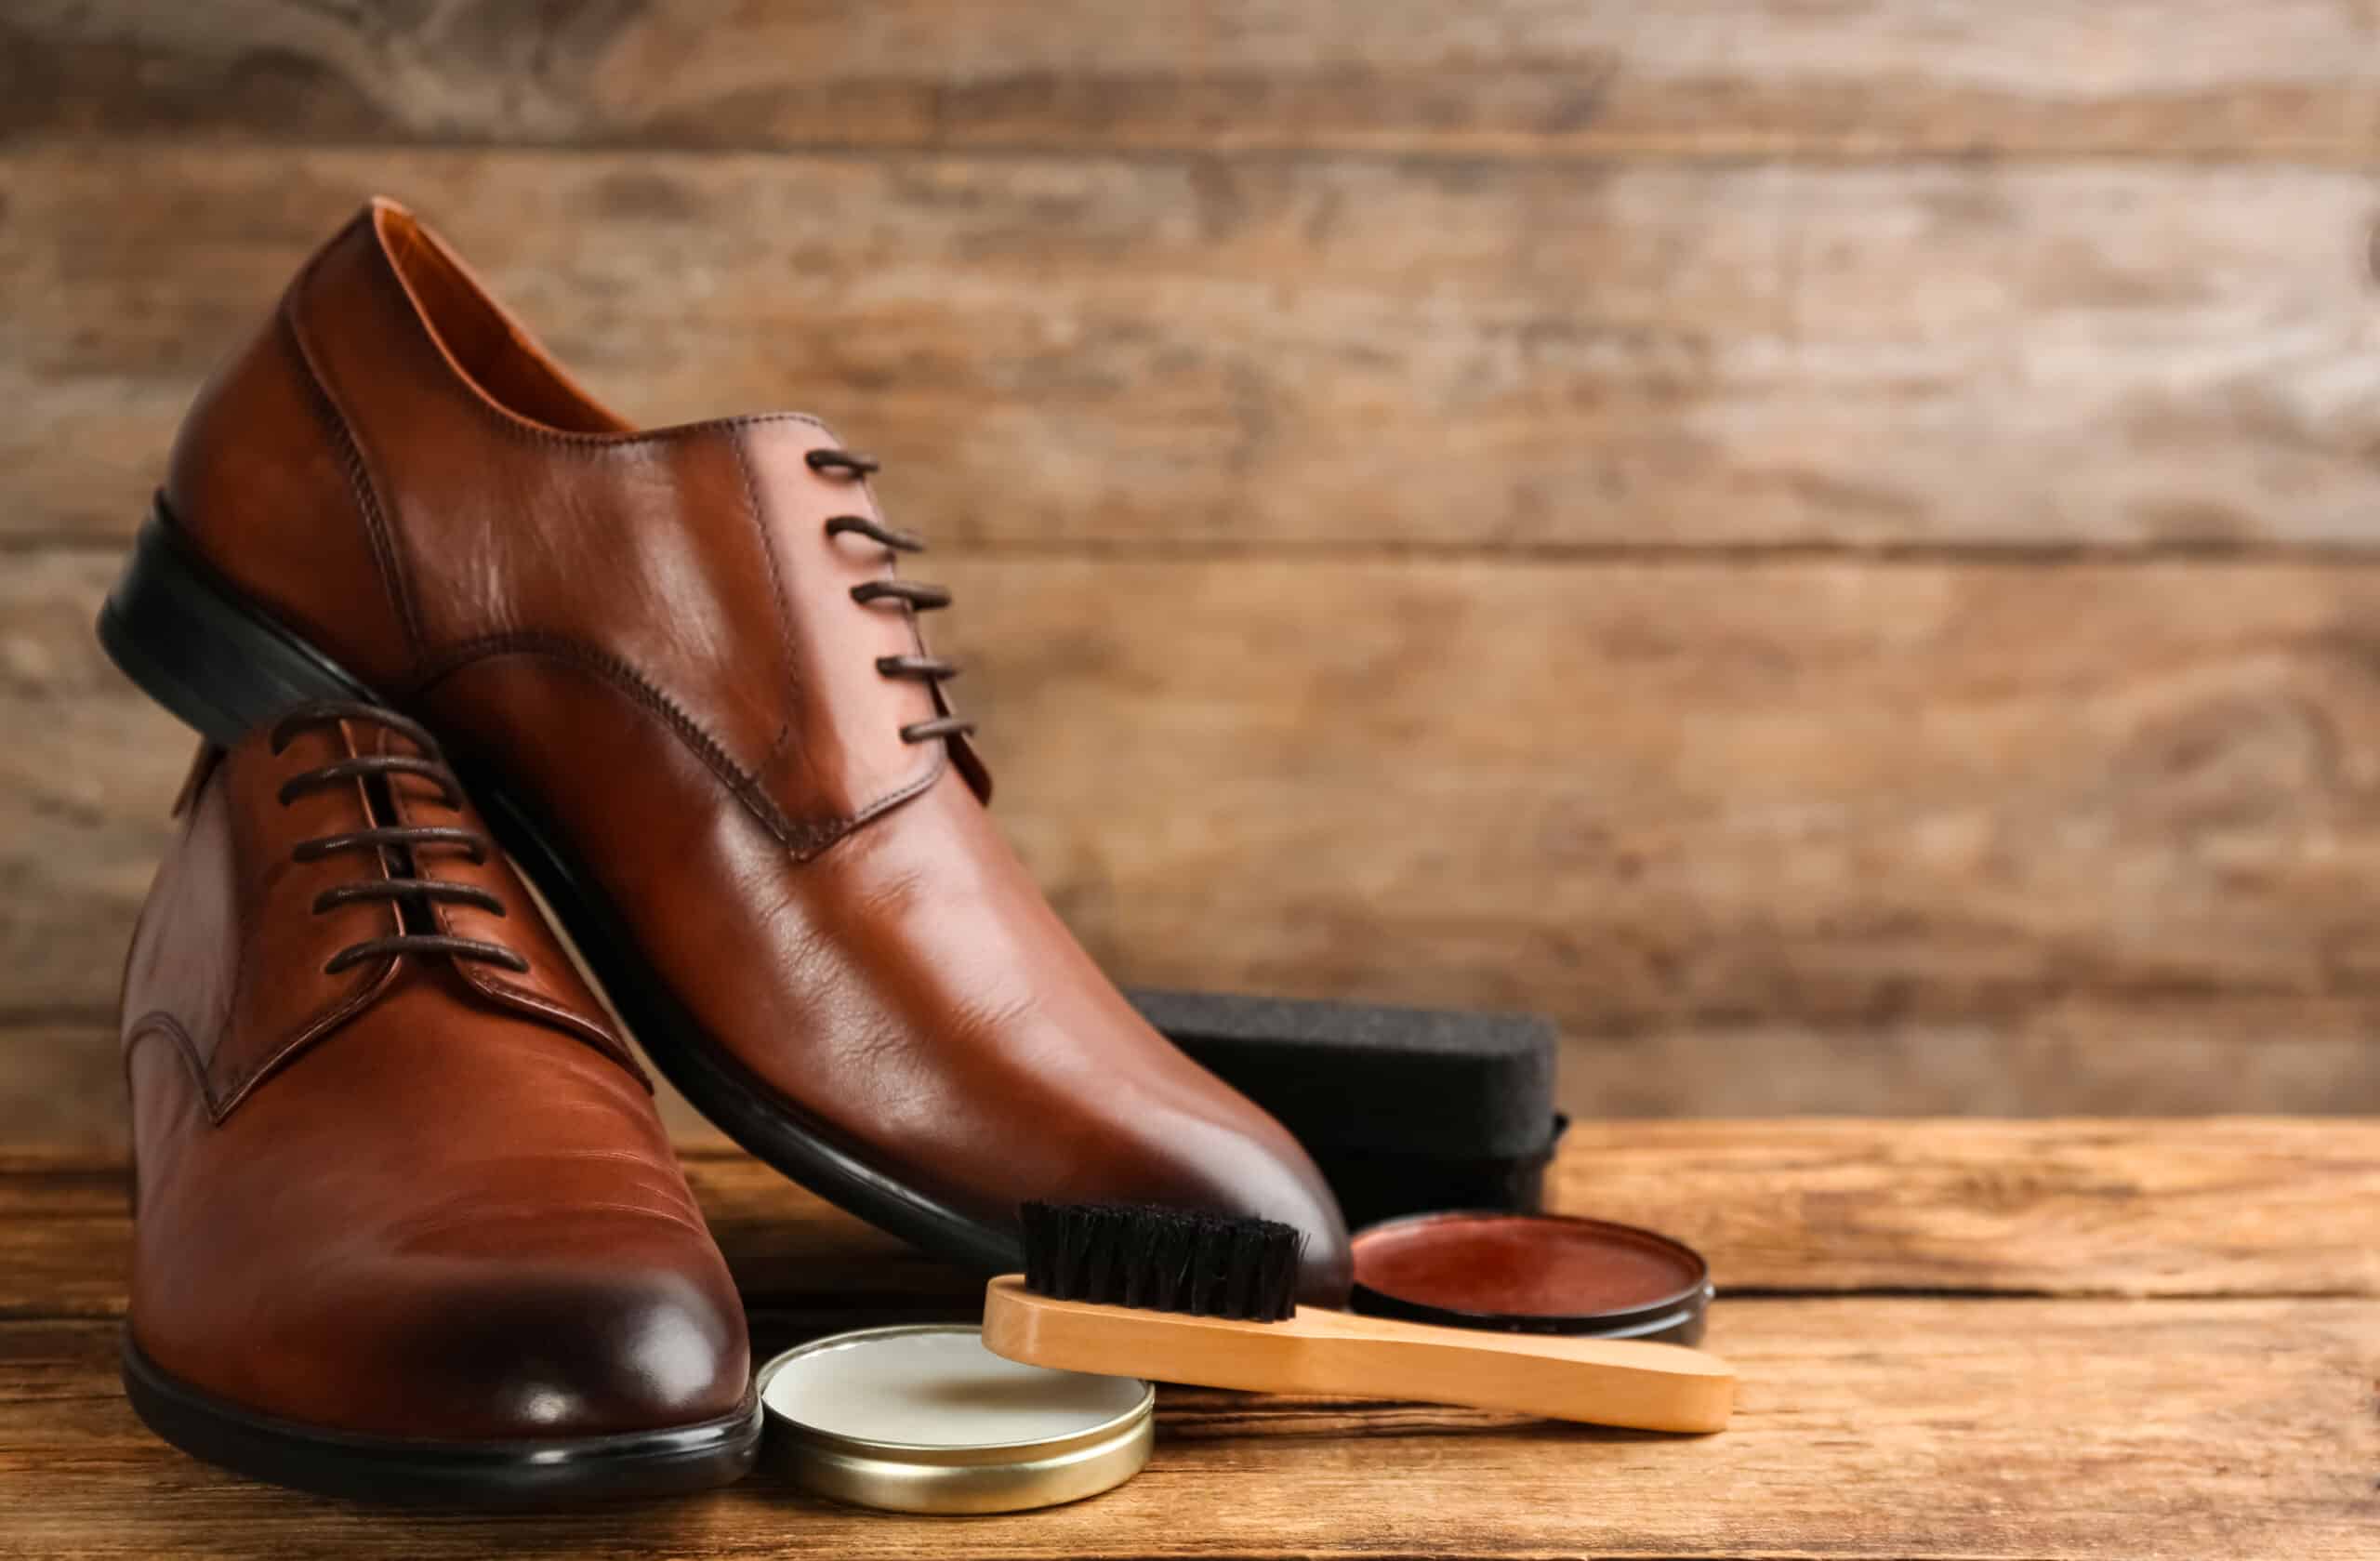 Entretien chaussure cuir : quelles sont les bonnes pratiques ?